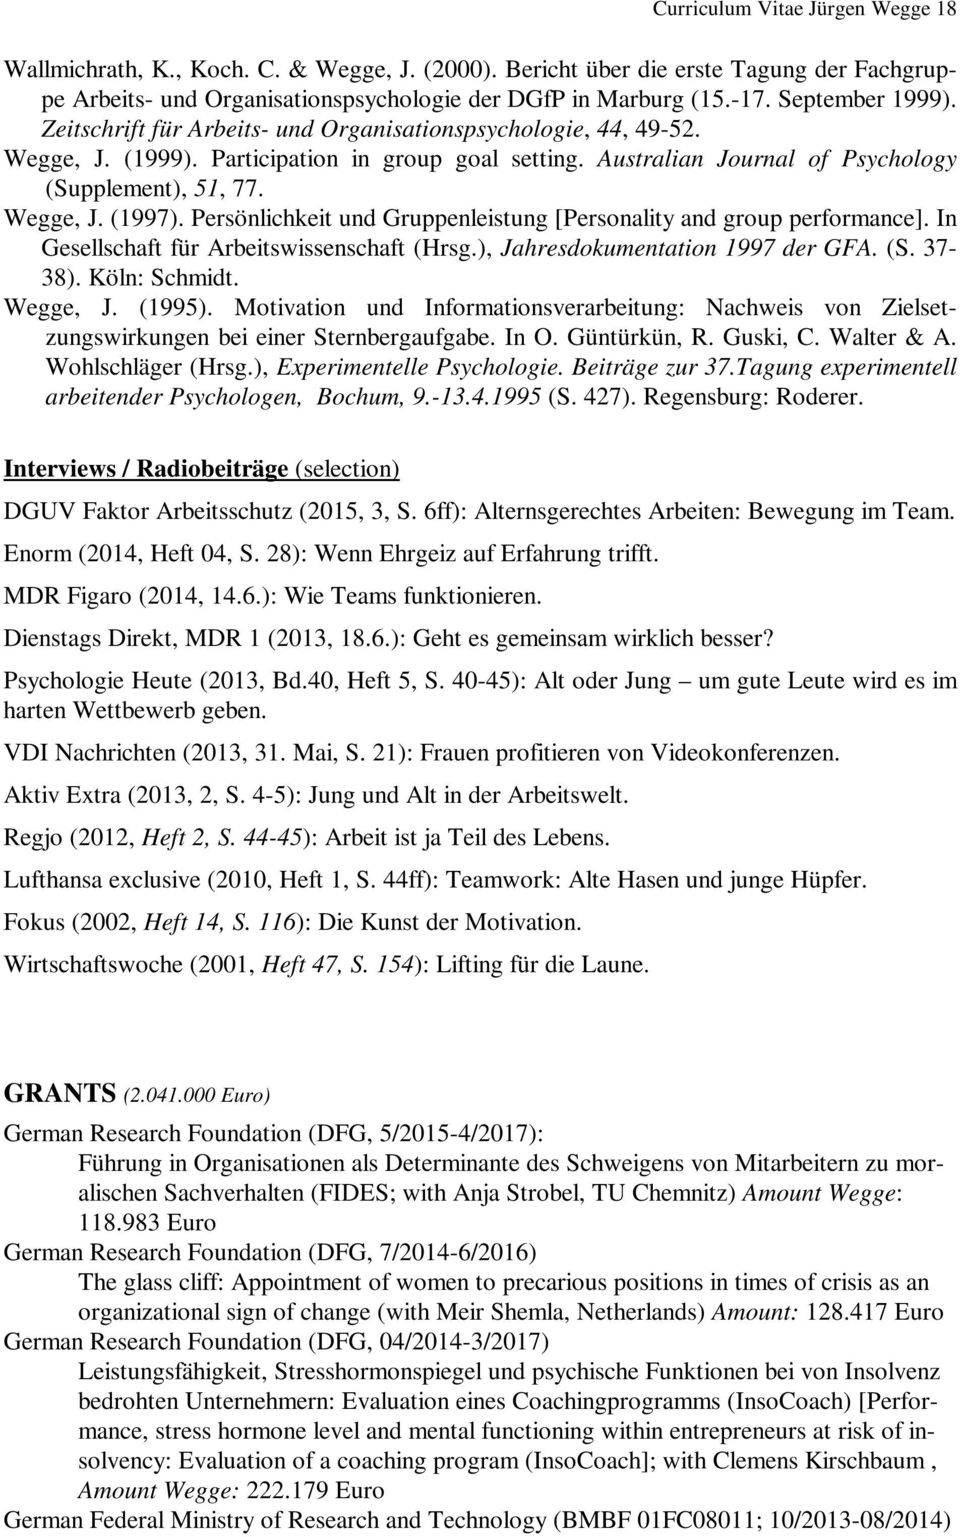 Wegge, J. (1997). Persönlichkeit und Gruppenleistung [Personality and group performance]. In Gesellschaft für Arbeitswissenschaft (Hrsg.), Jahresdokumentation 1997 der GFA. (S. 37-38). Köln: Schmidt.